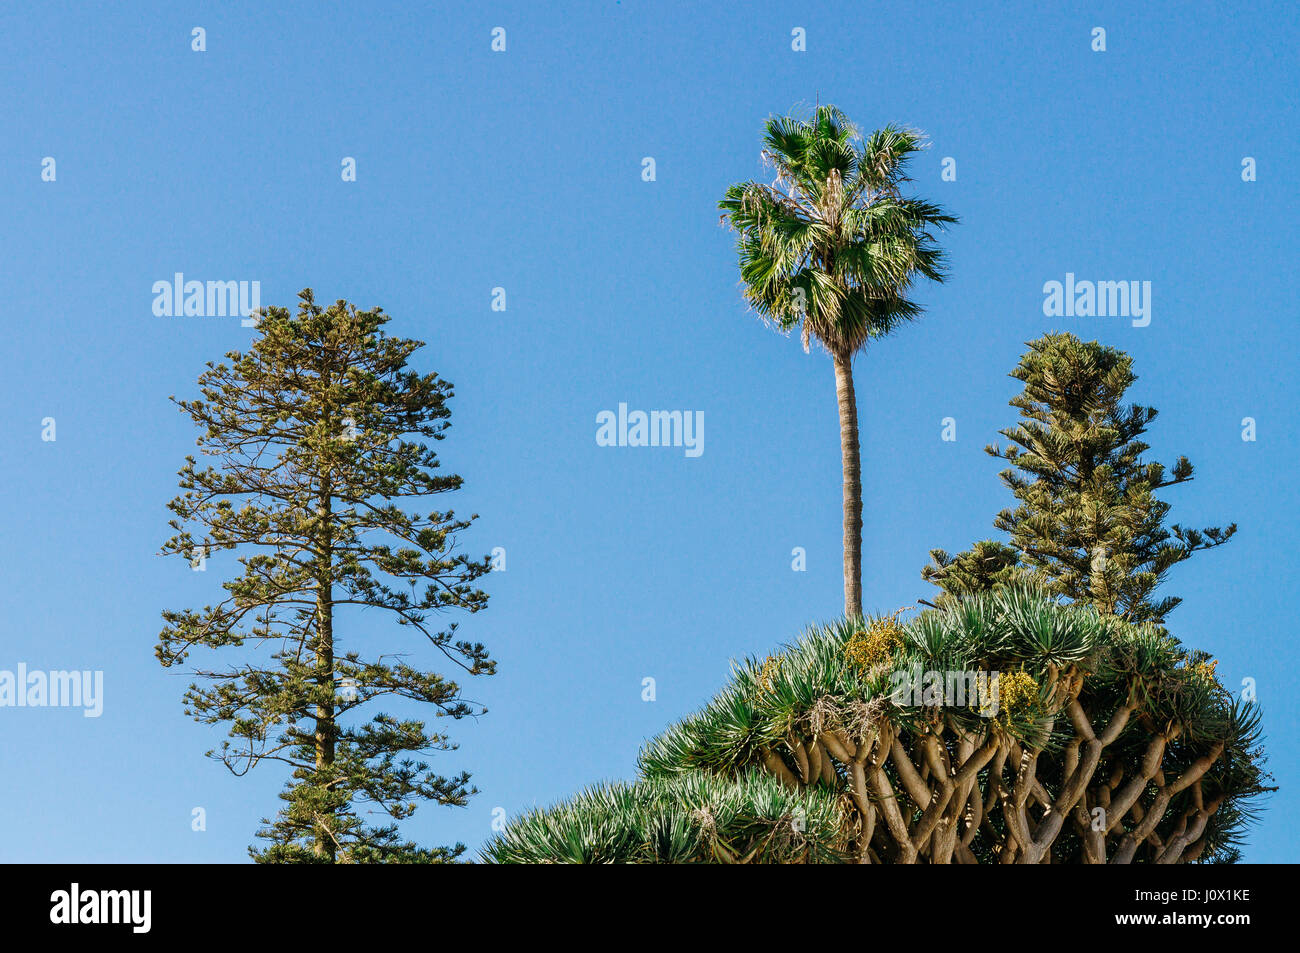 Canary islands trees: palm, pine tree and dracaena draco Stock Photo